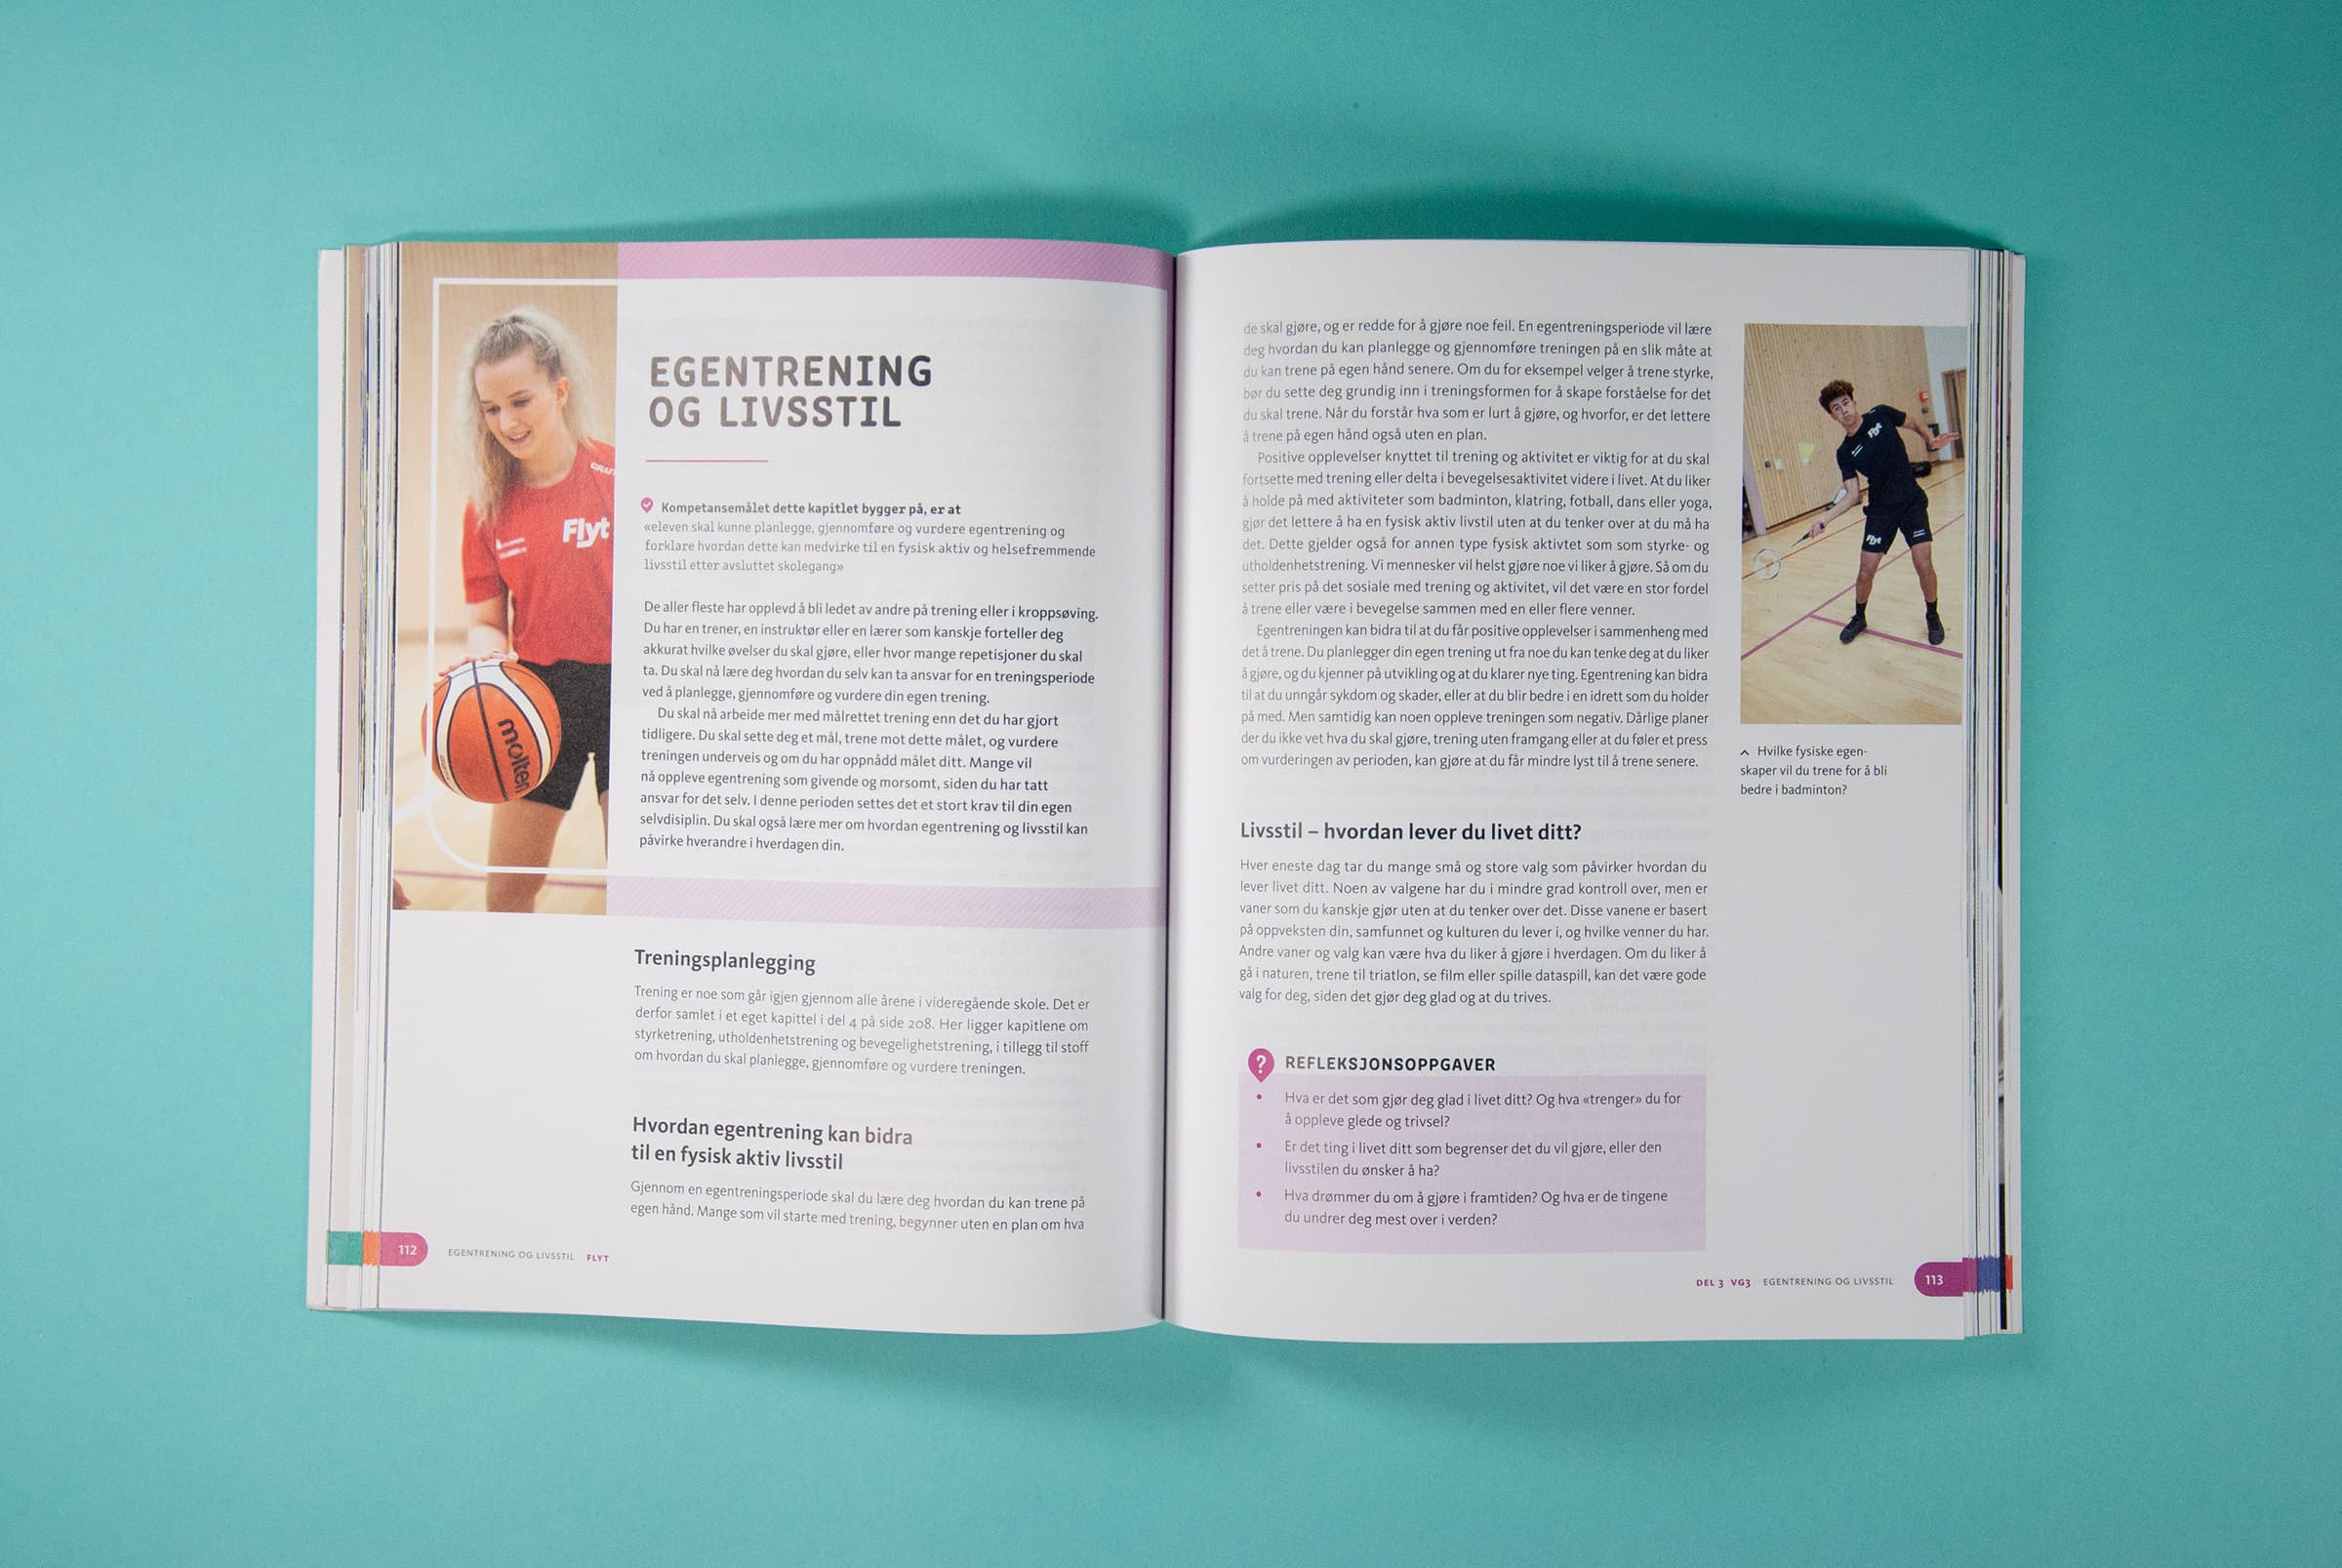 Bildet viser et oppslag i boken med tittel "Egentrening og livsstil". Til venstre er det et bilde av en jente som spiller basketball, og på høyre side er det et bilde av en gutt som spiller badminton. Støttefargen i dette kapittelet er rosa.